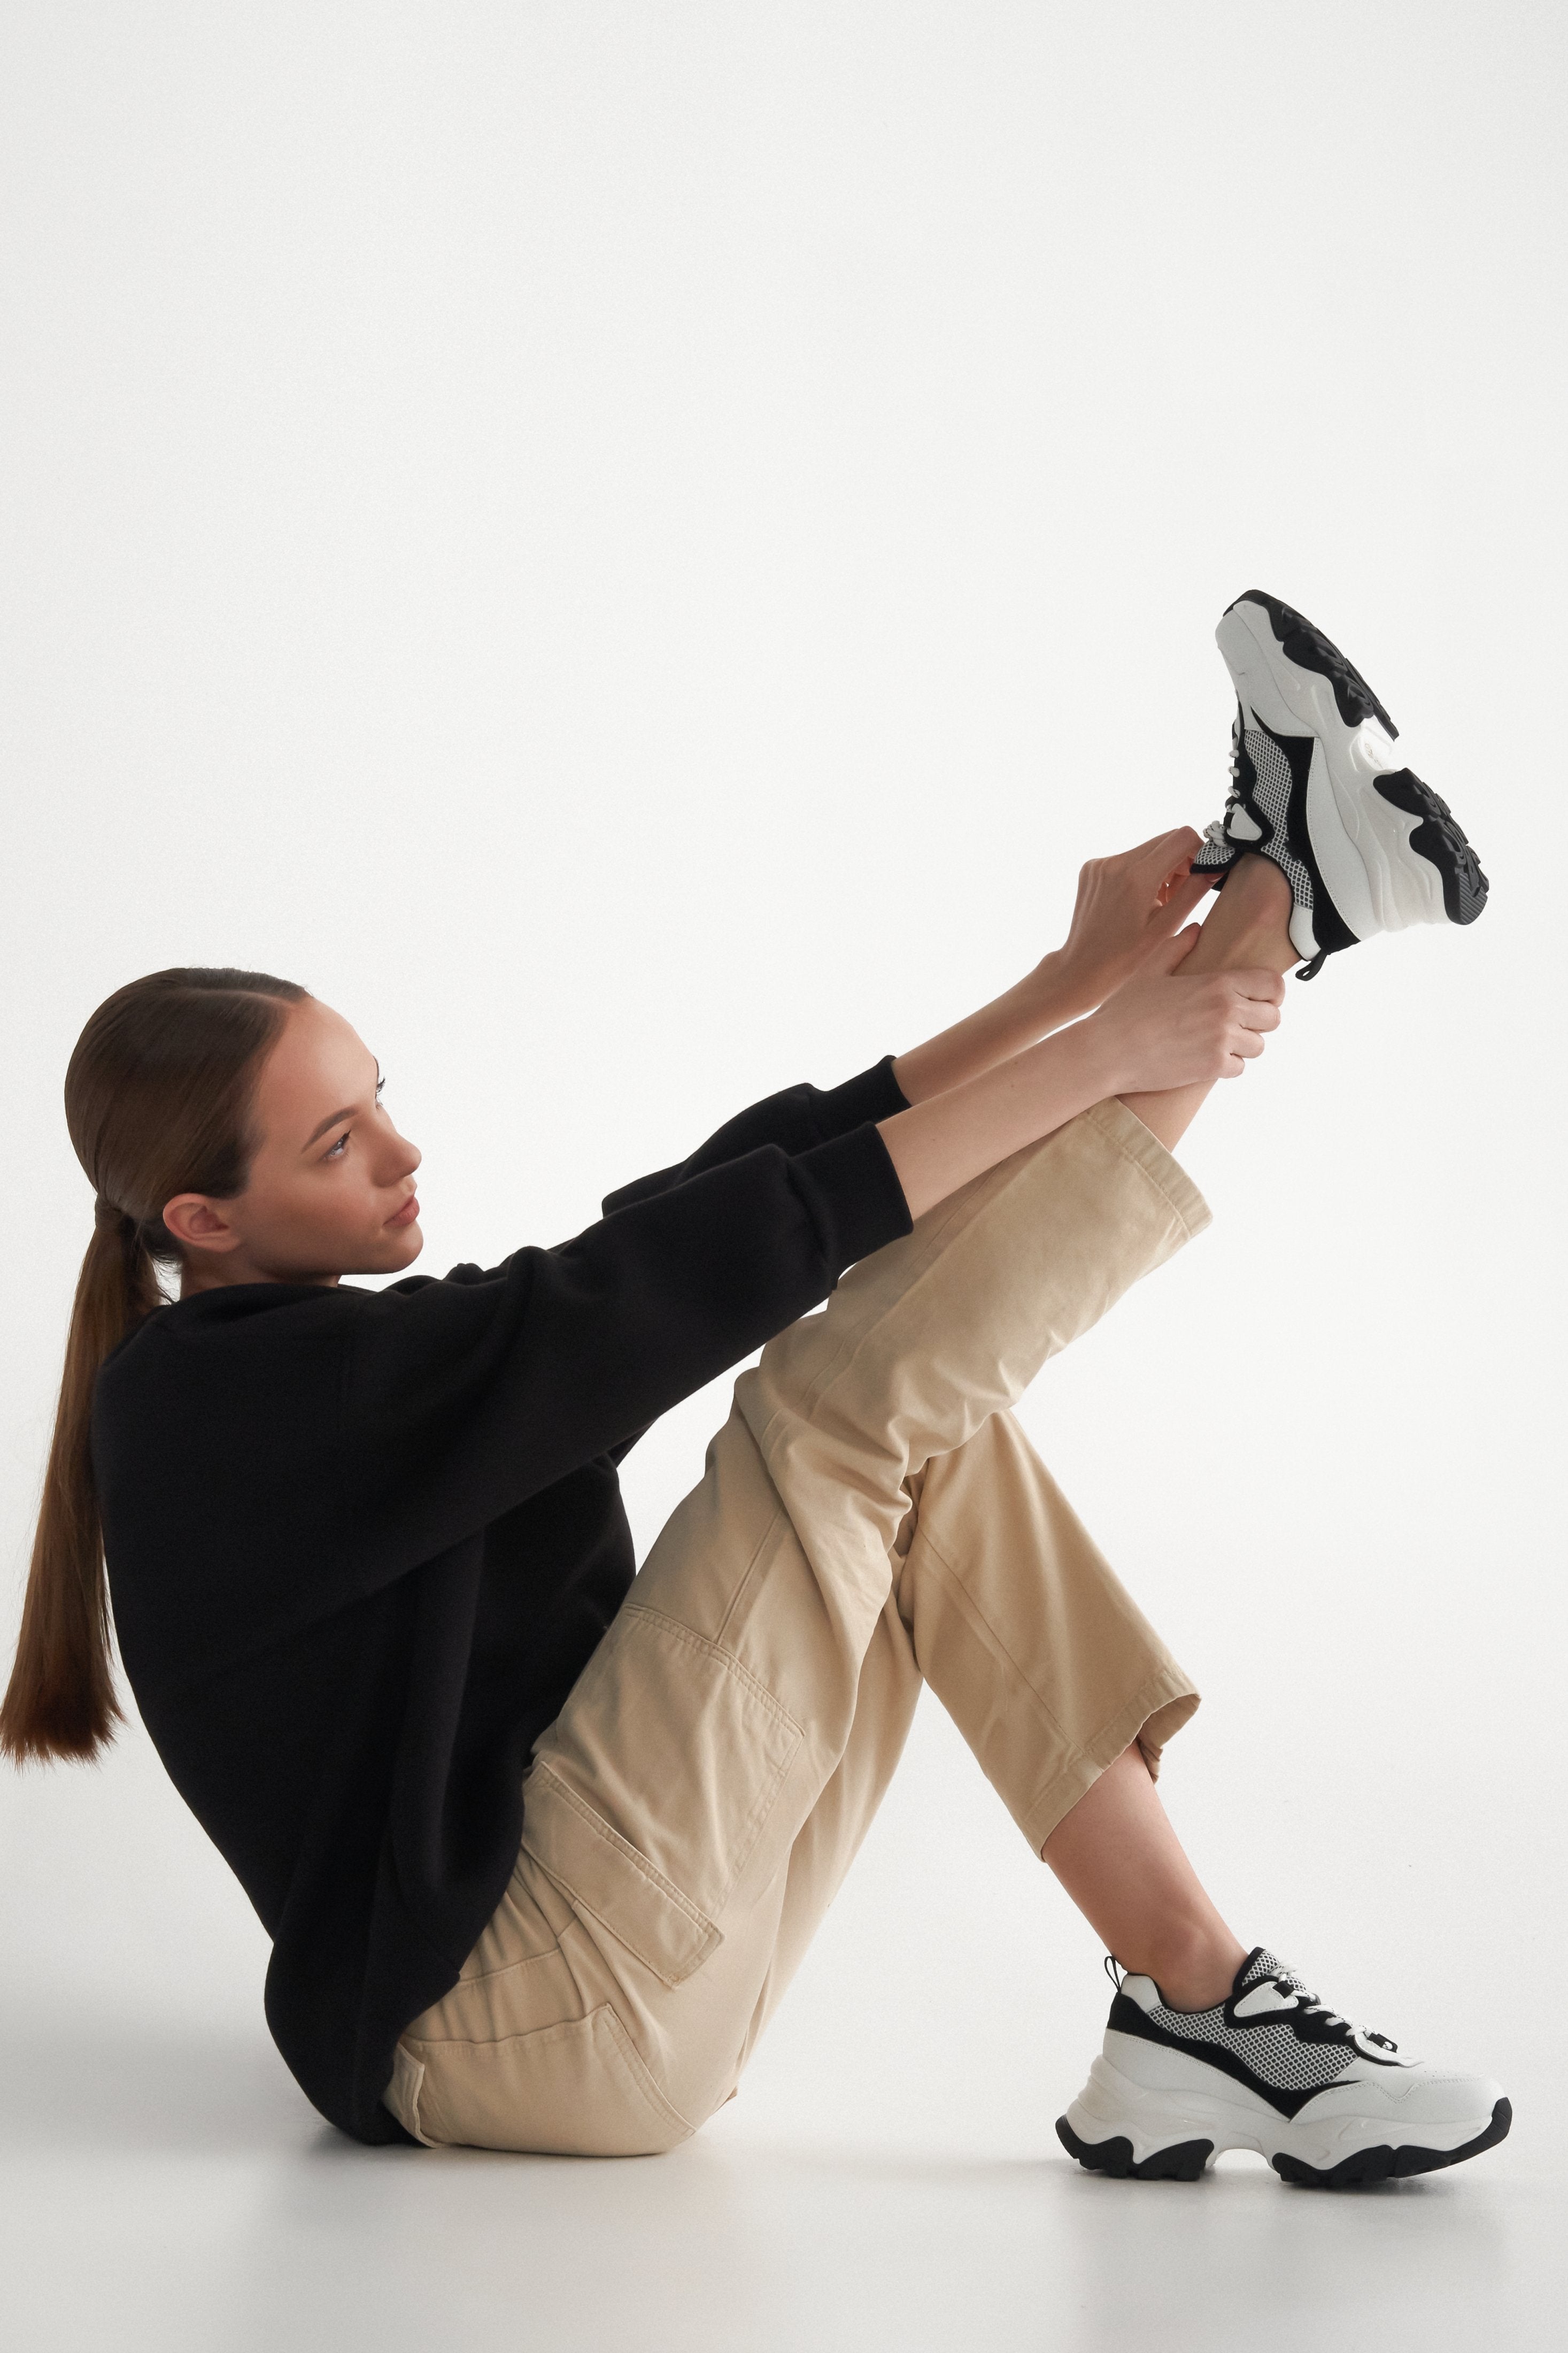 Sneakersy damskie ES 8 ze skóry naturalnej, biało-czarne - prezentacja obuwia na modelce.